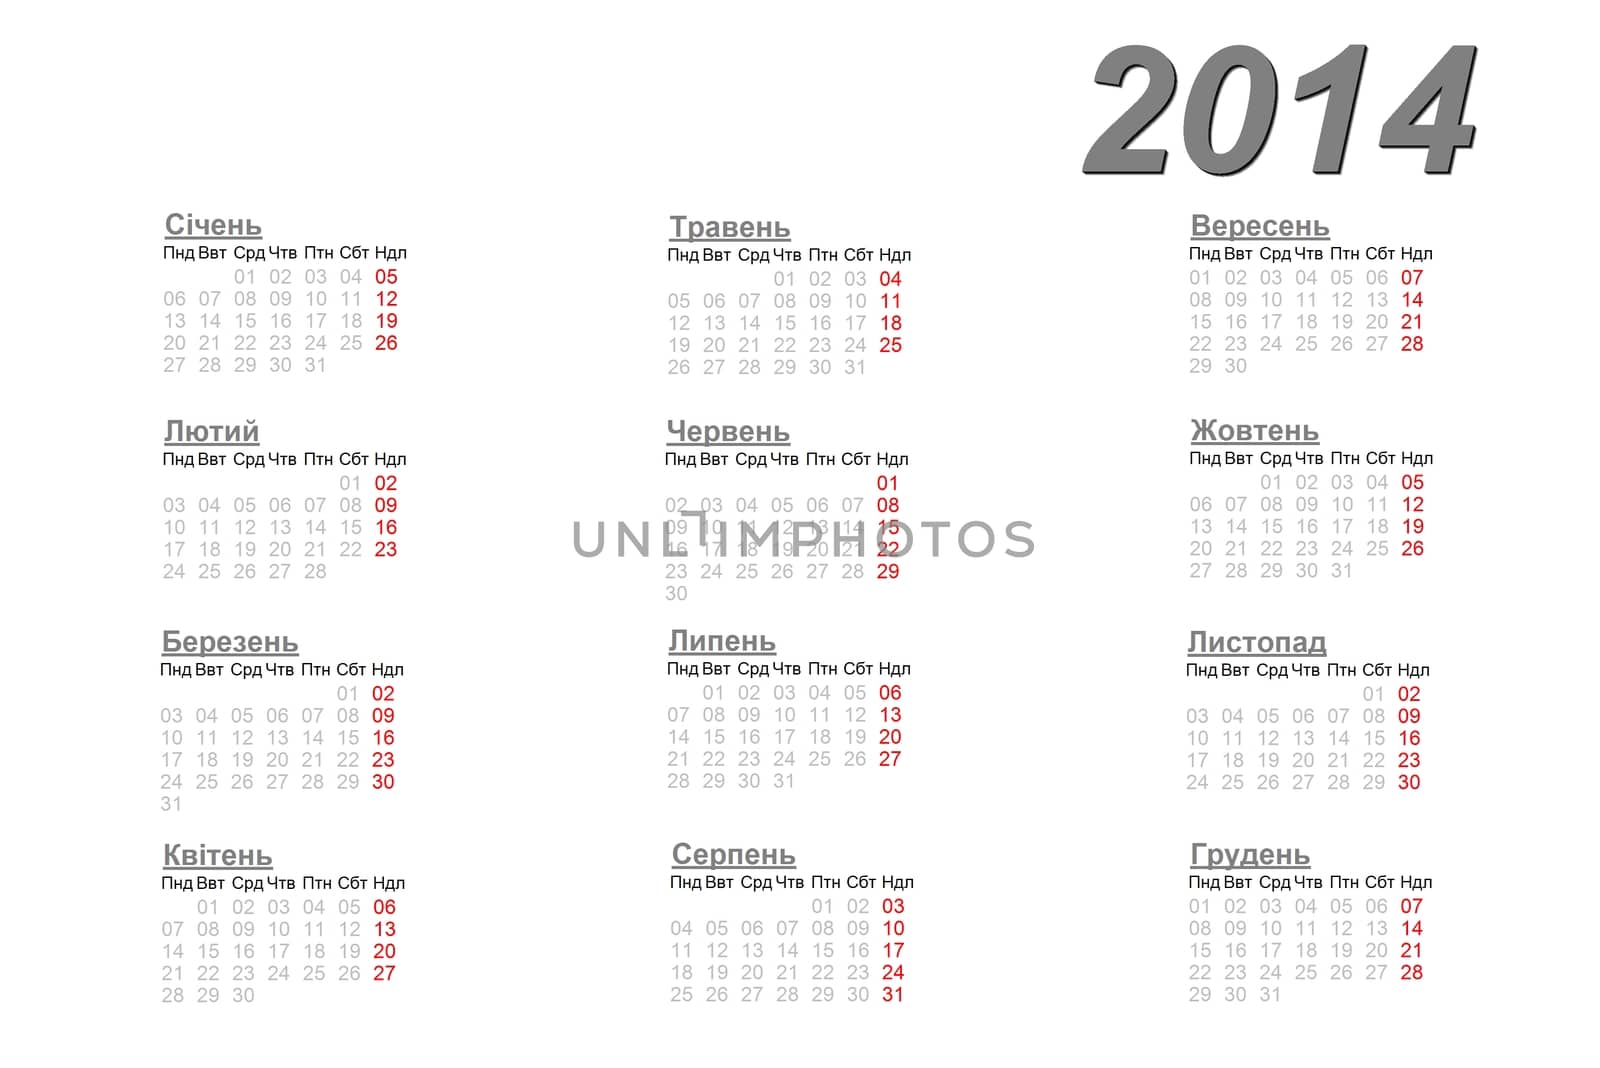 Ukrainian calendar for 2014 by Elenaphotos21